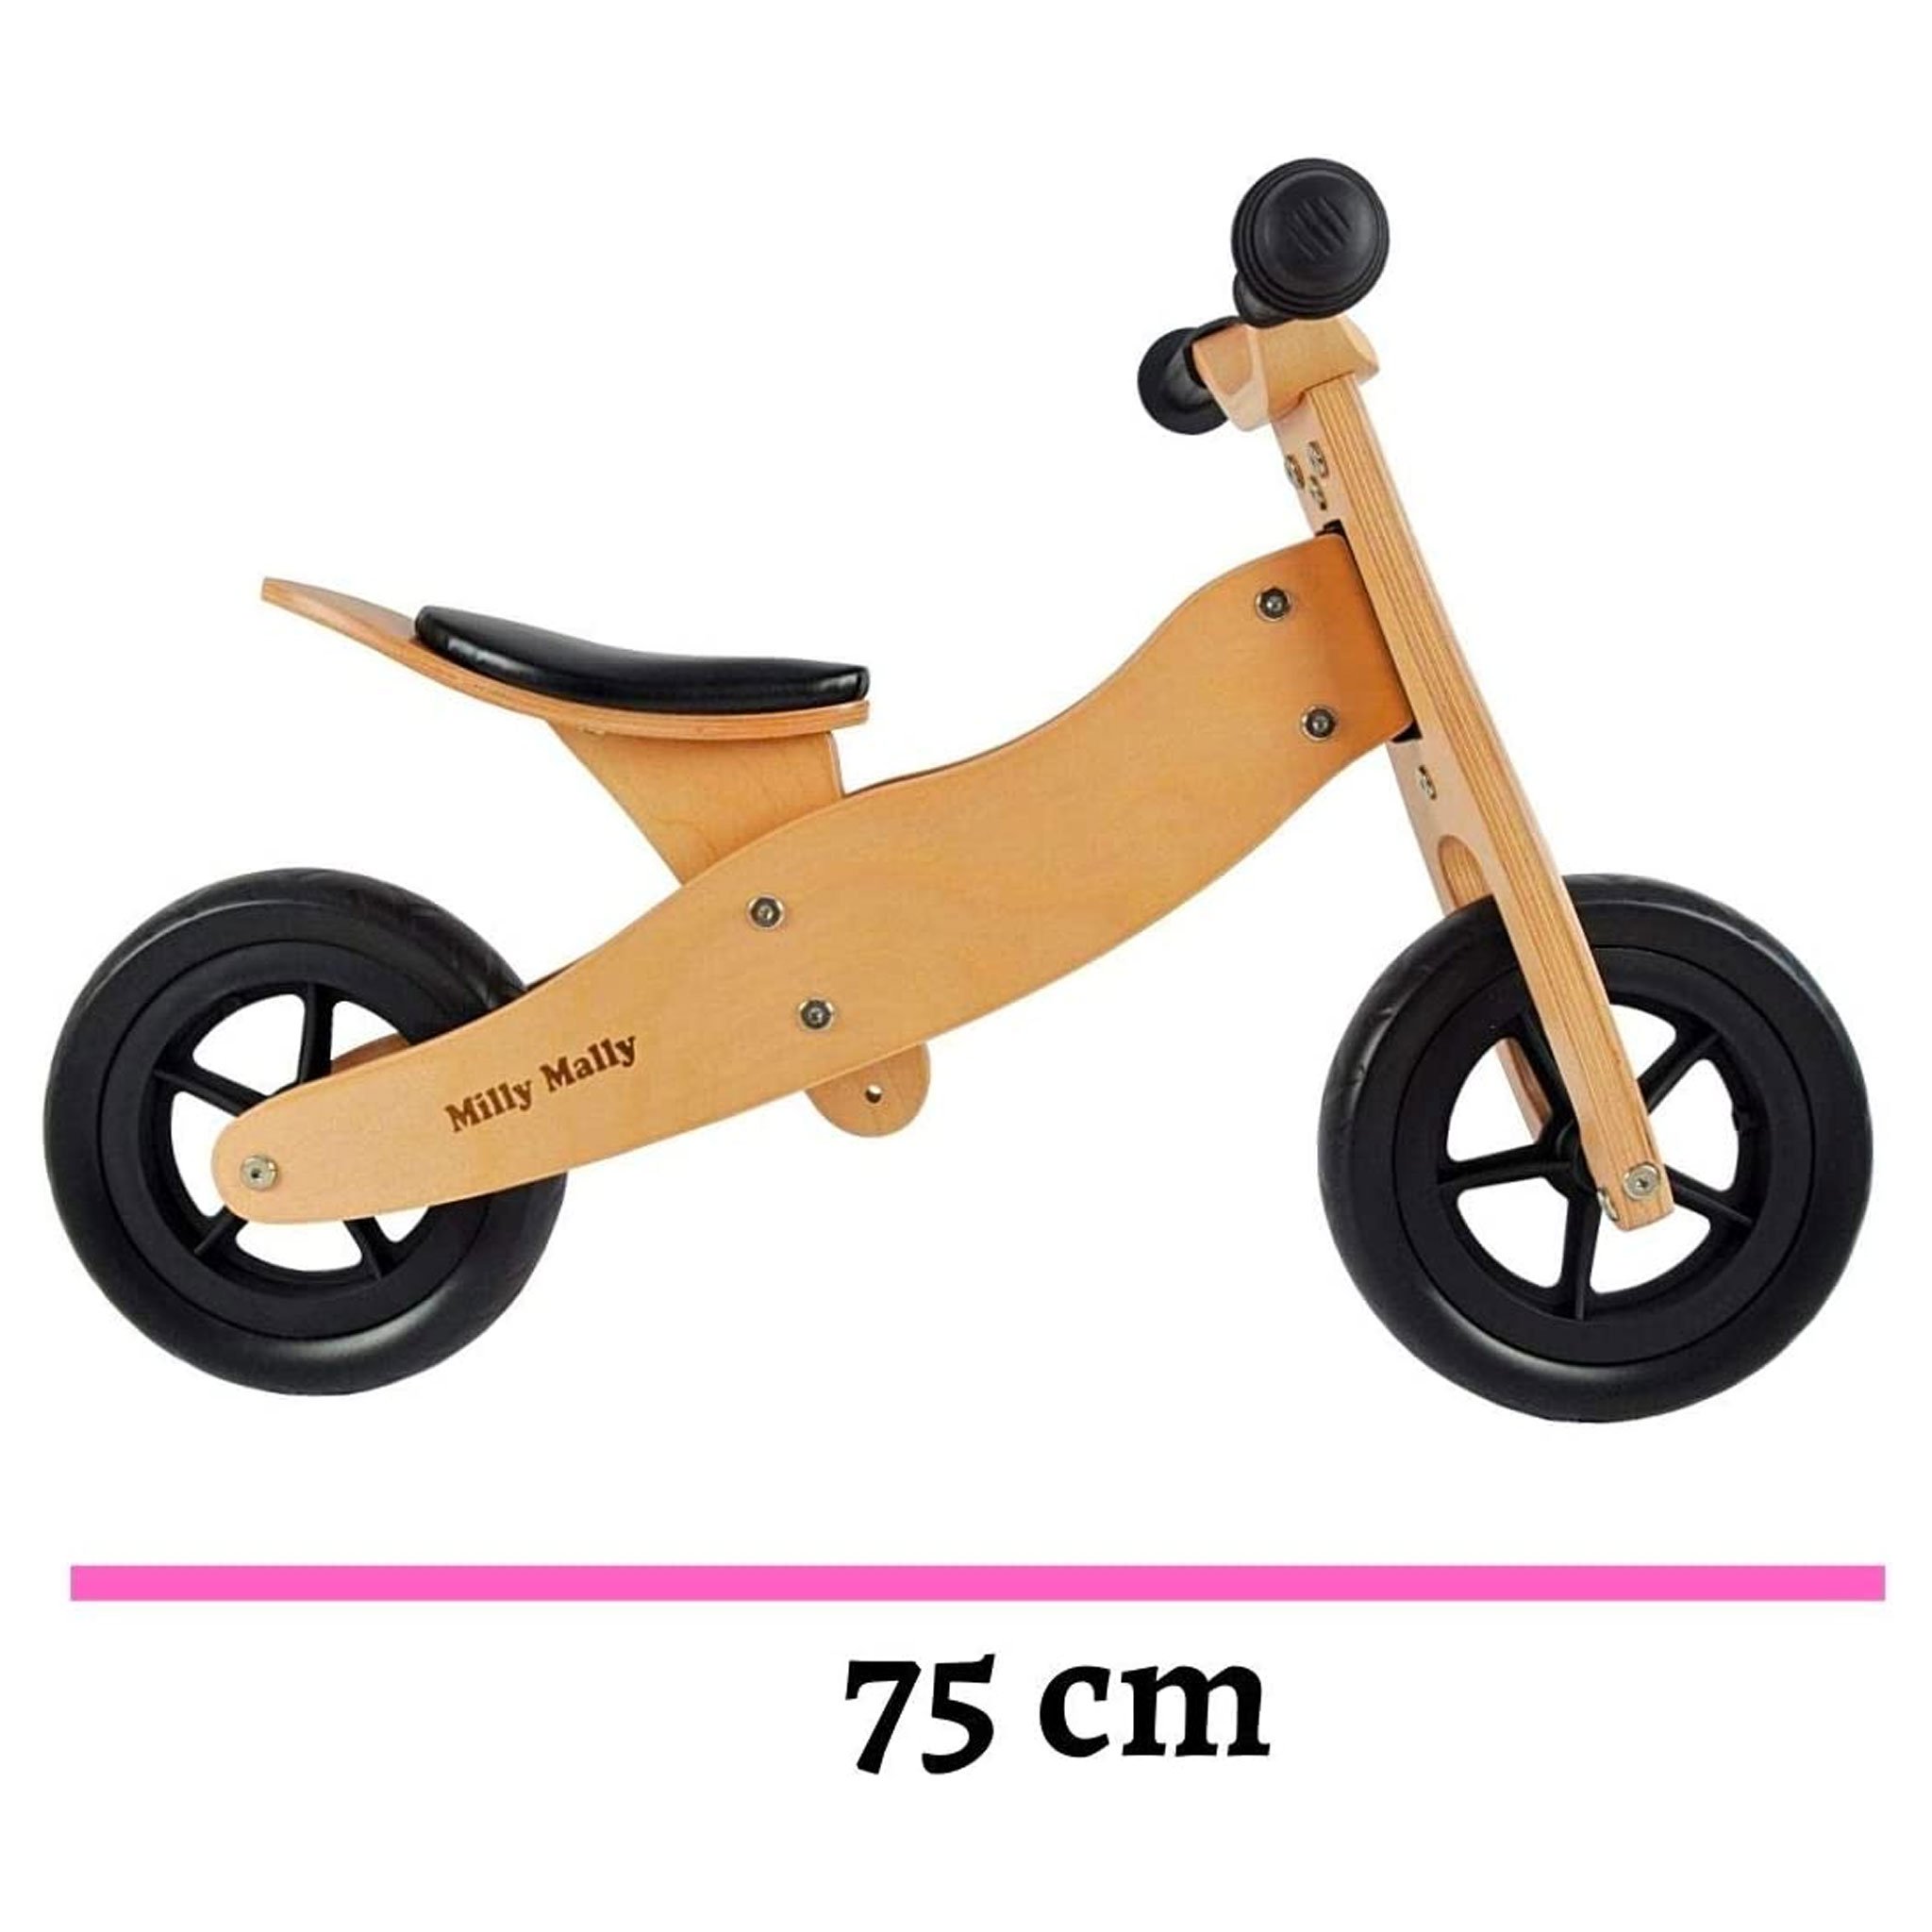 PM2770-triciclo-legno-cavalcabile-ruote-bici-senza-pedali-bambini-equilibrio-balance-bike-giochi-esterno-mobilita-crescita-legno-betulla-all-terrain-trasforma-lato-casa-prodotto-misure-sella-regolazione-larghezza-lunghezza.jpg